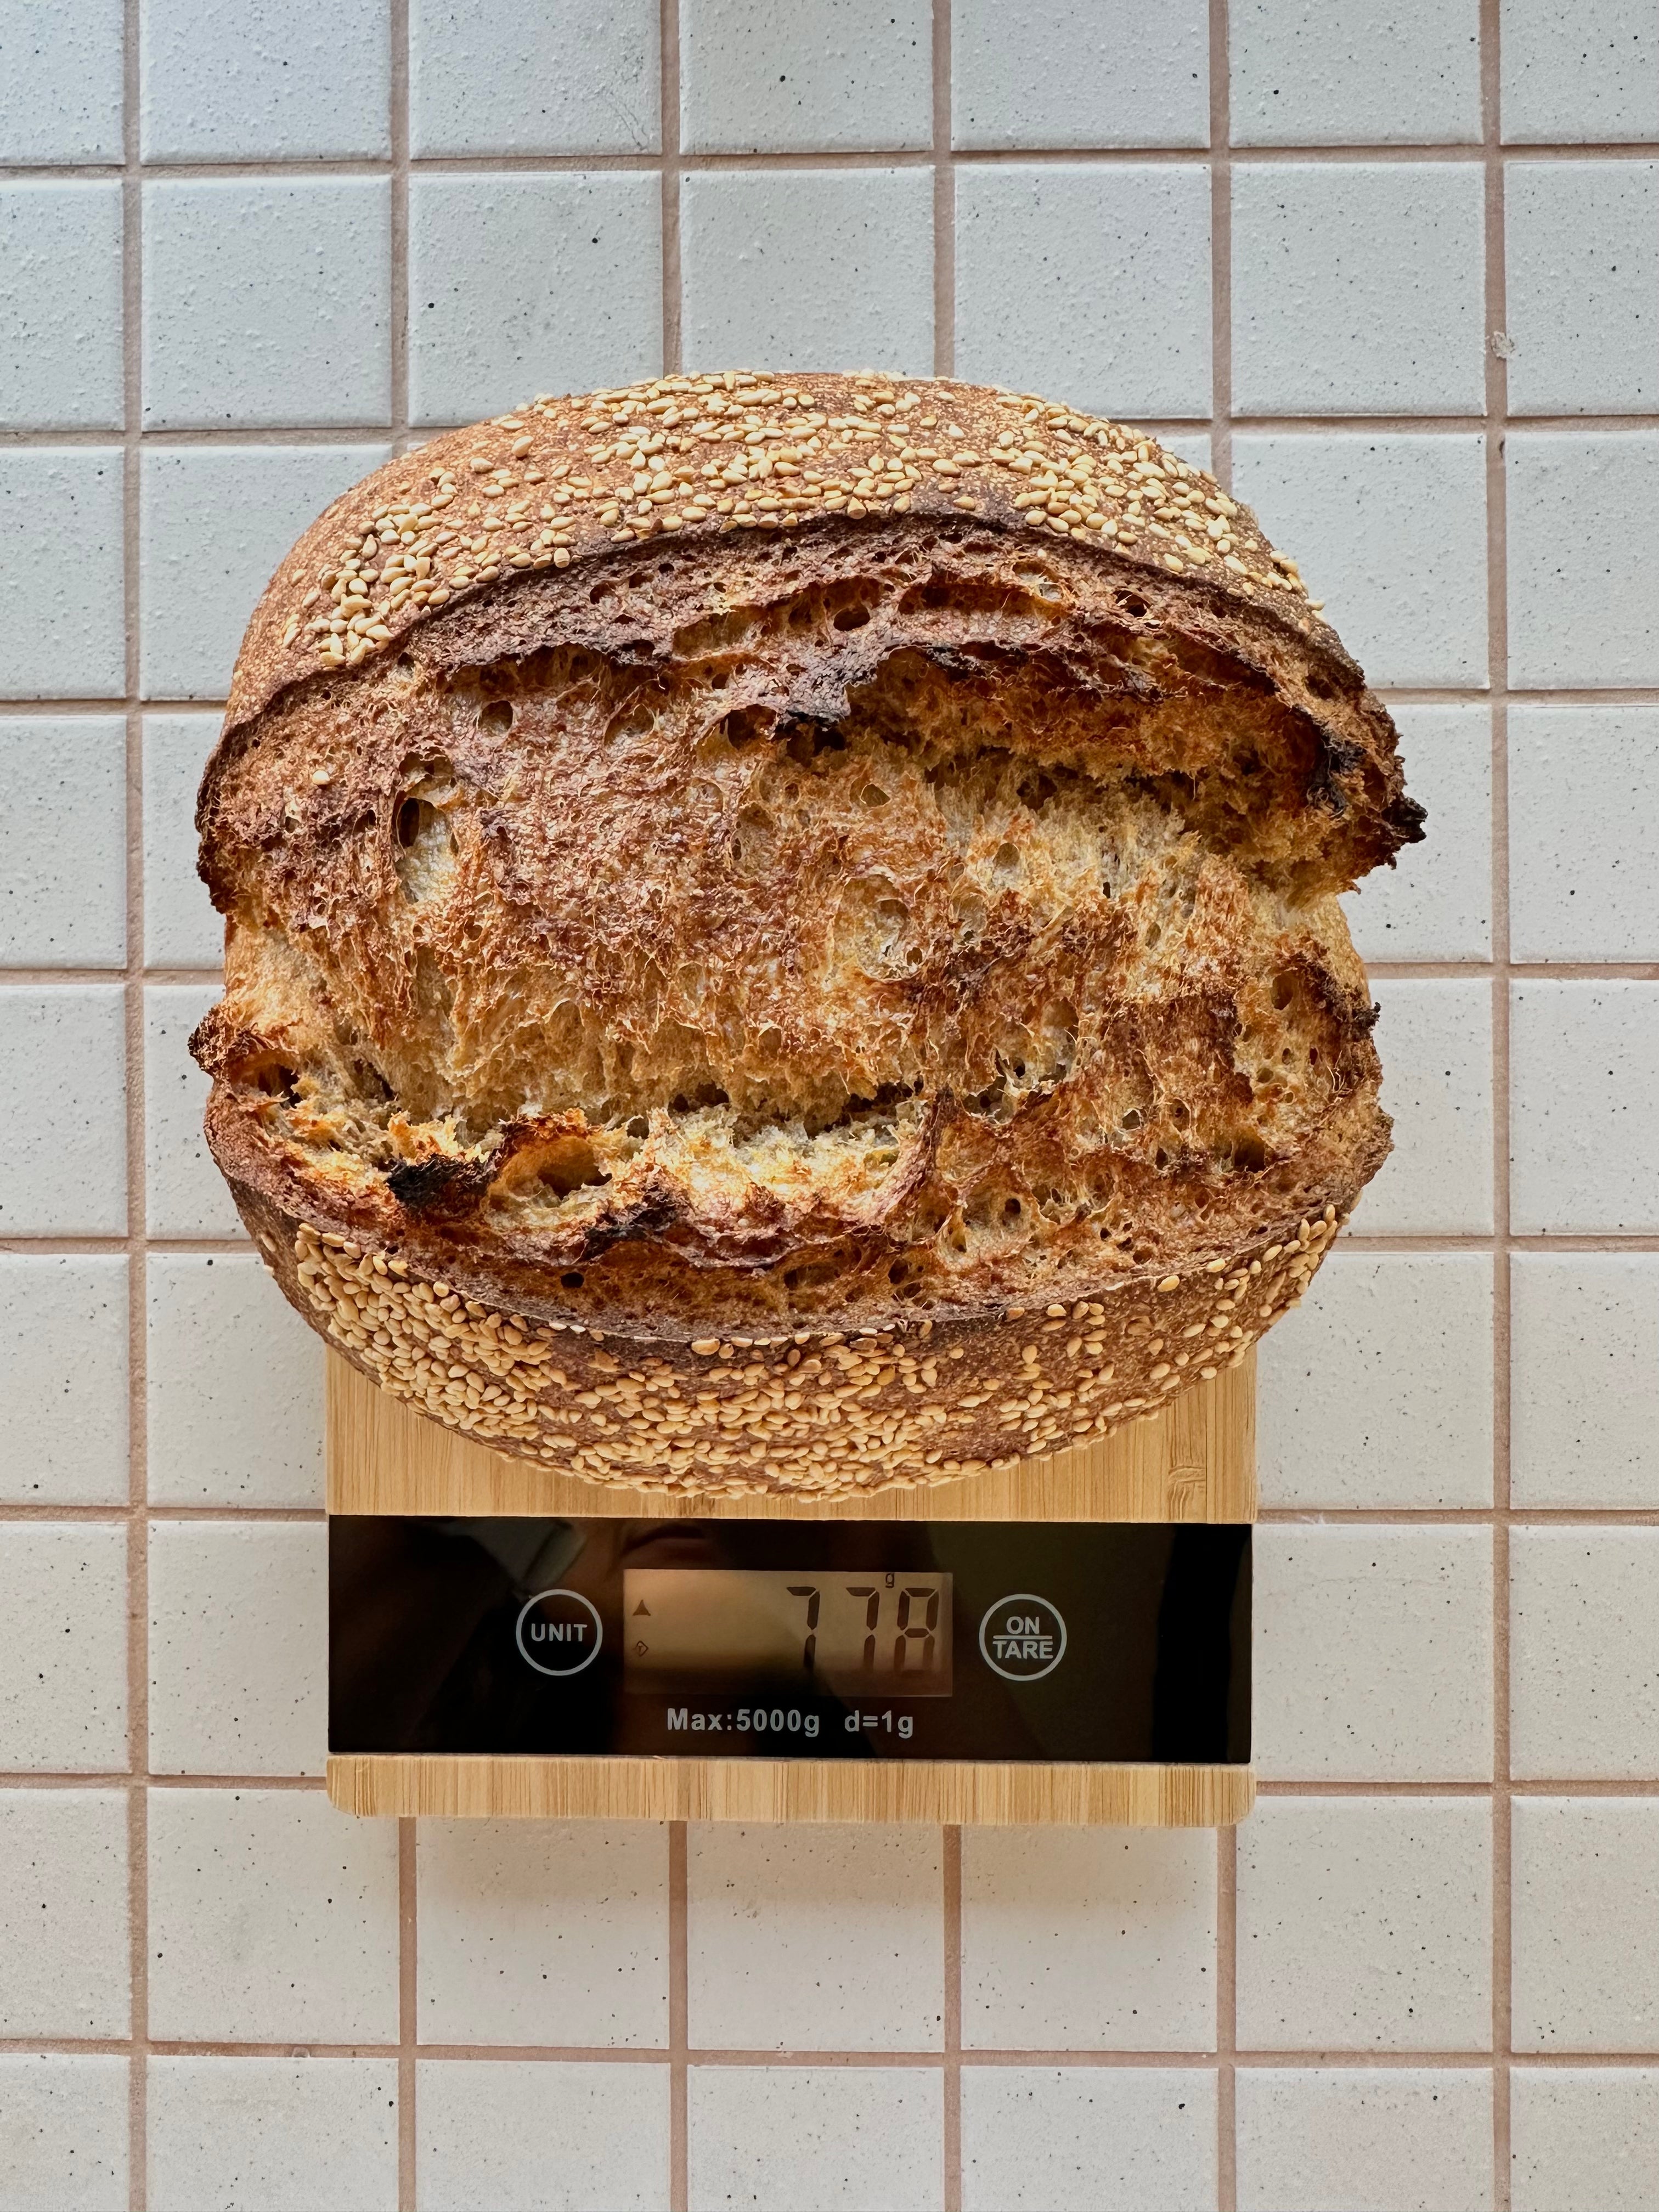 Breadtopia's Choice Digital Precision Scale – Breadtopia